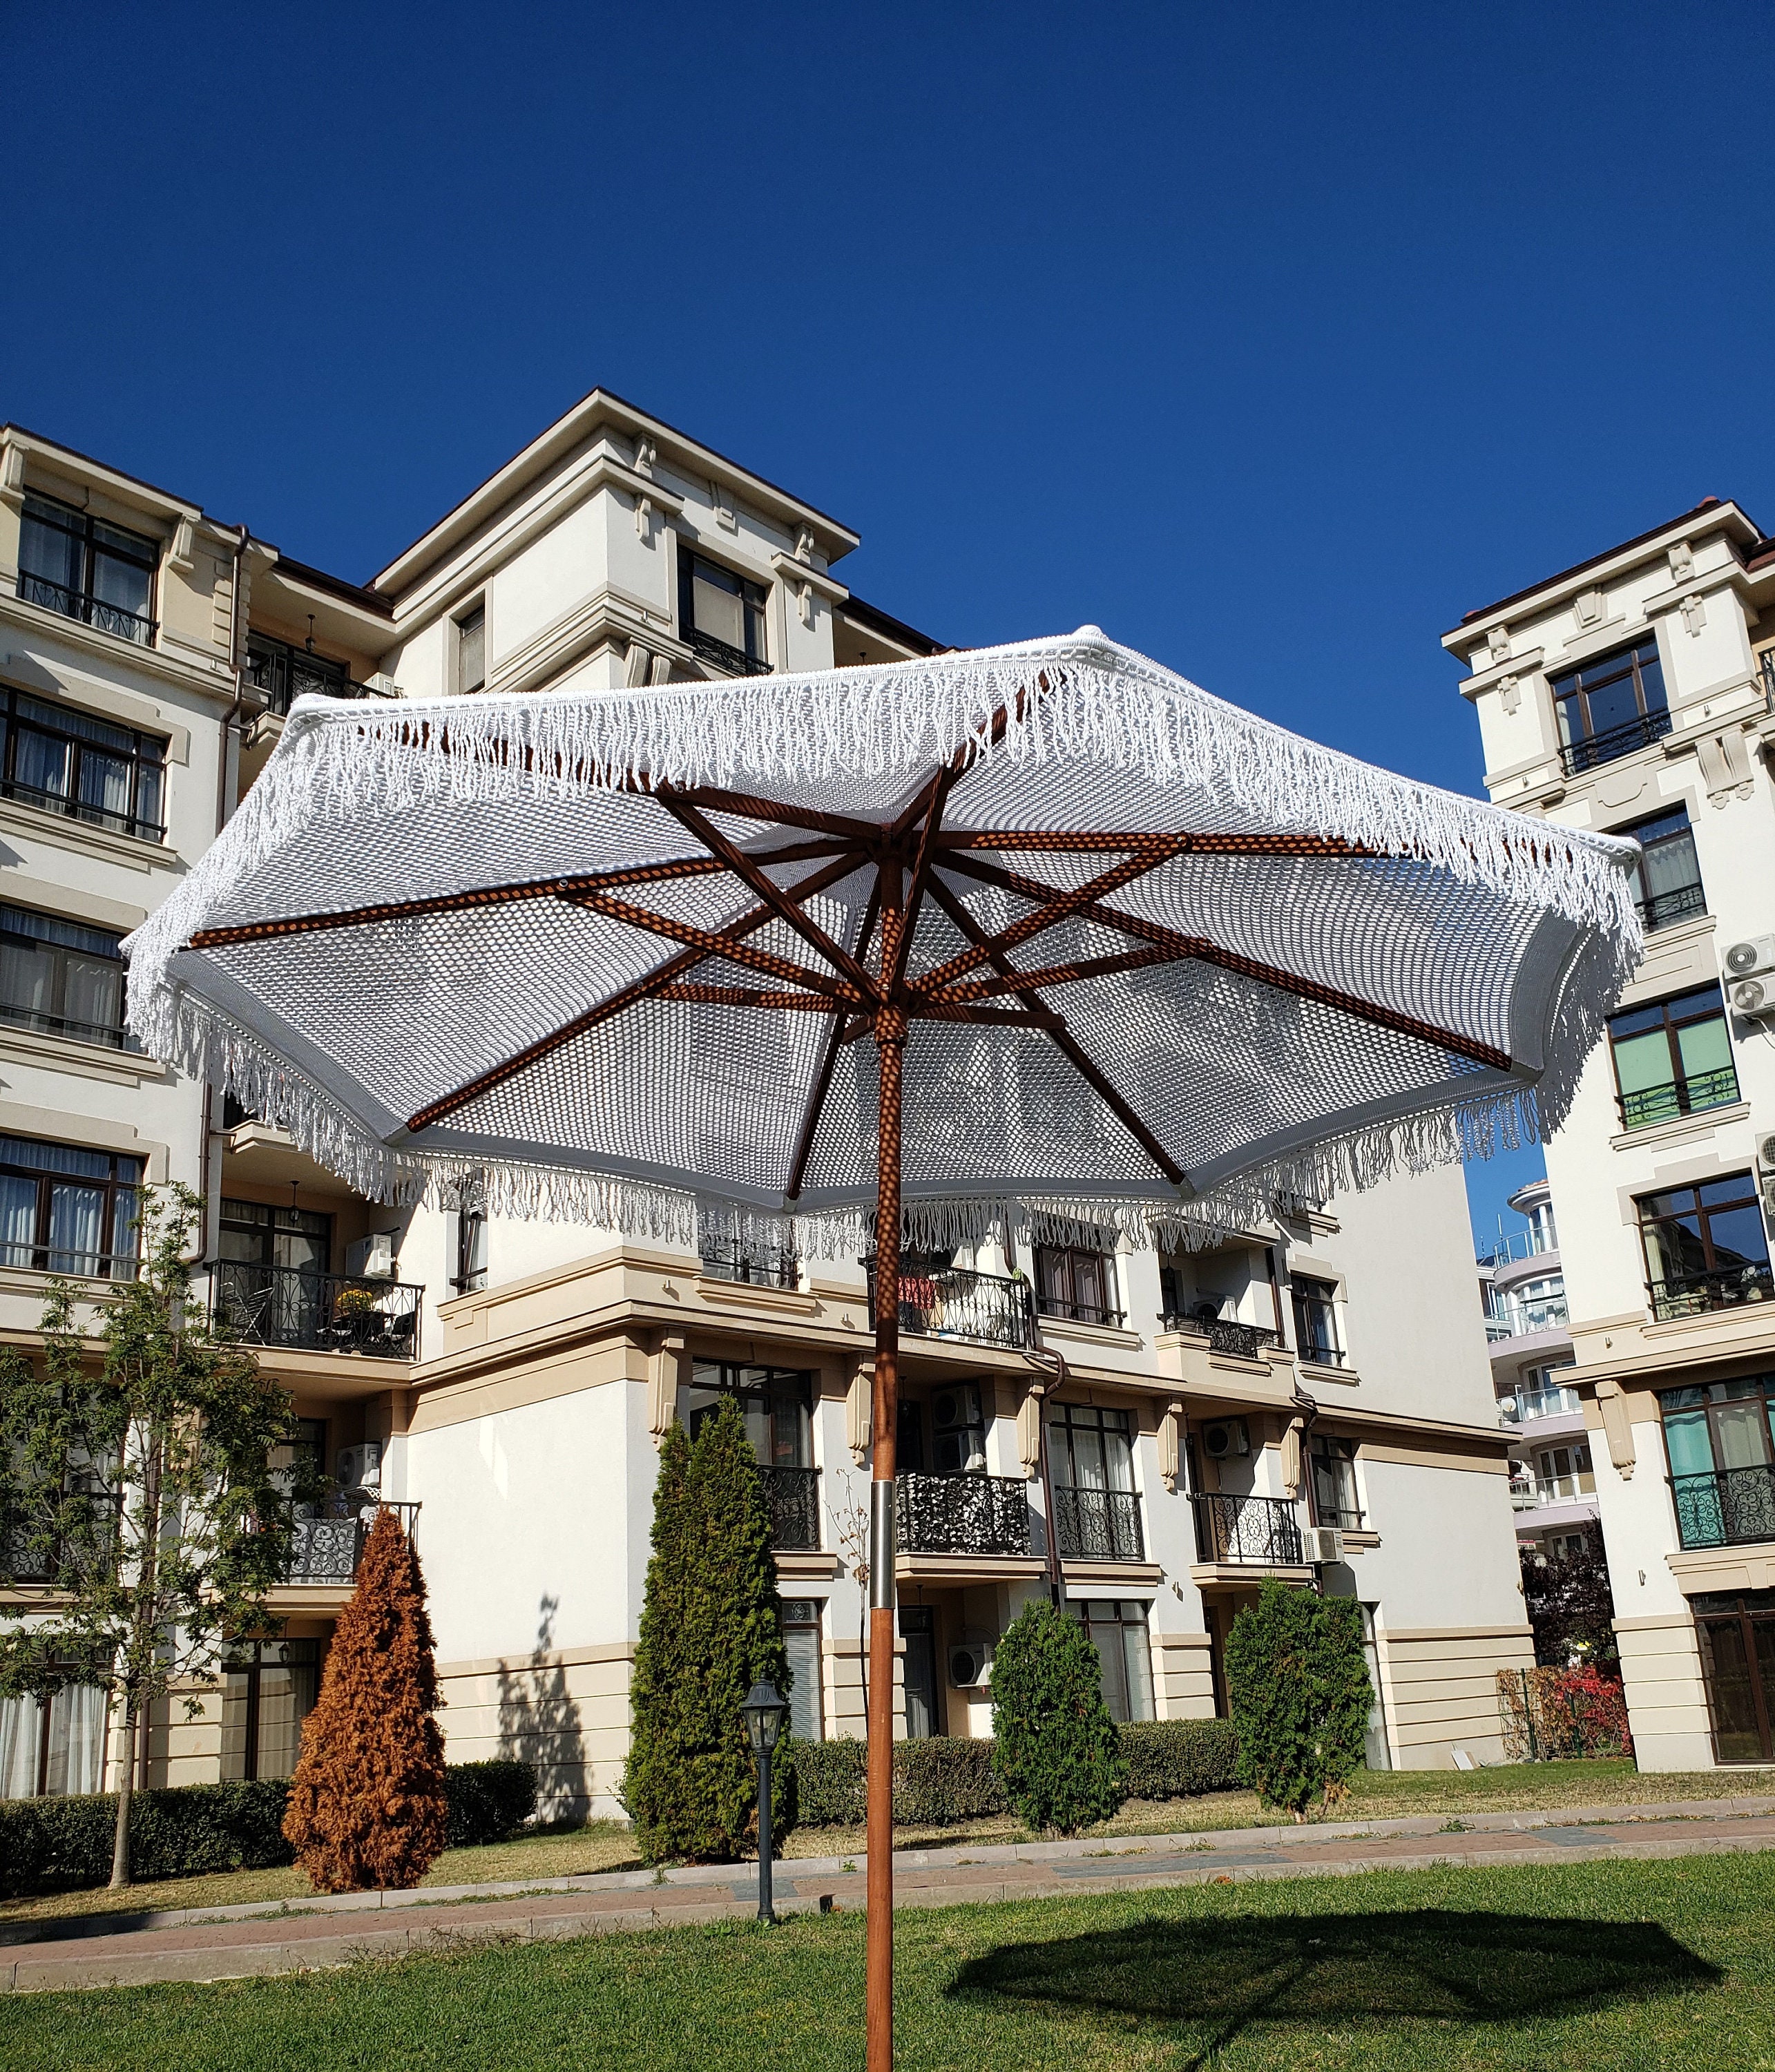 3pcs Wandhaken Regenschirm Form Nette Kunststoff bunte hängende